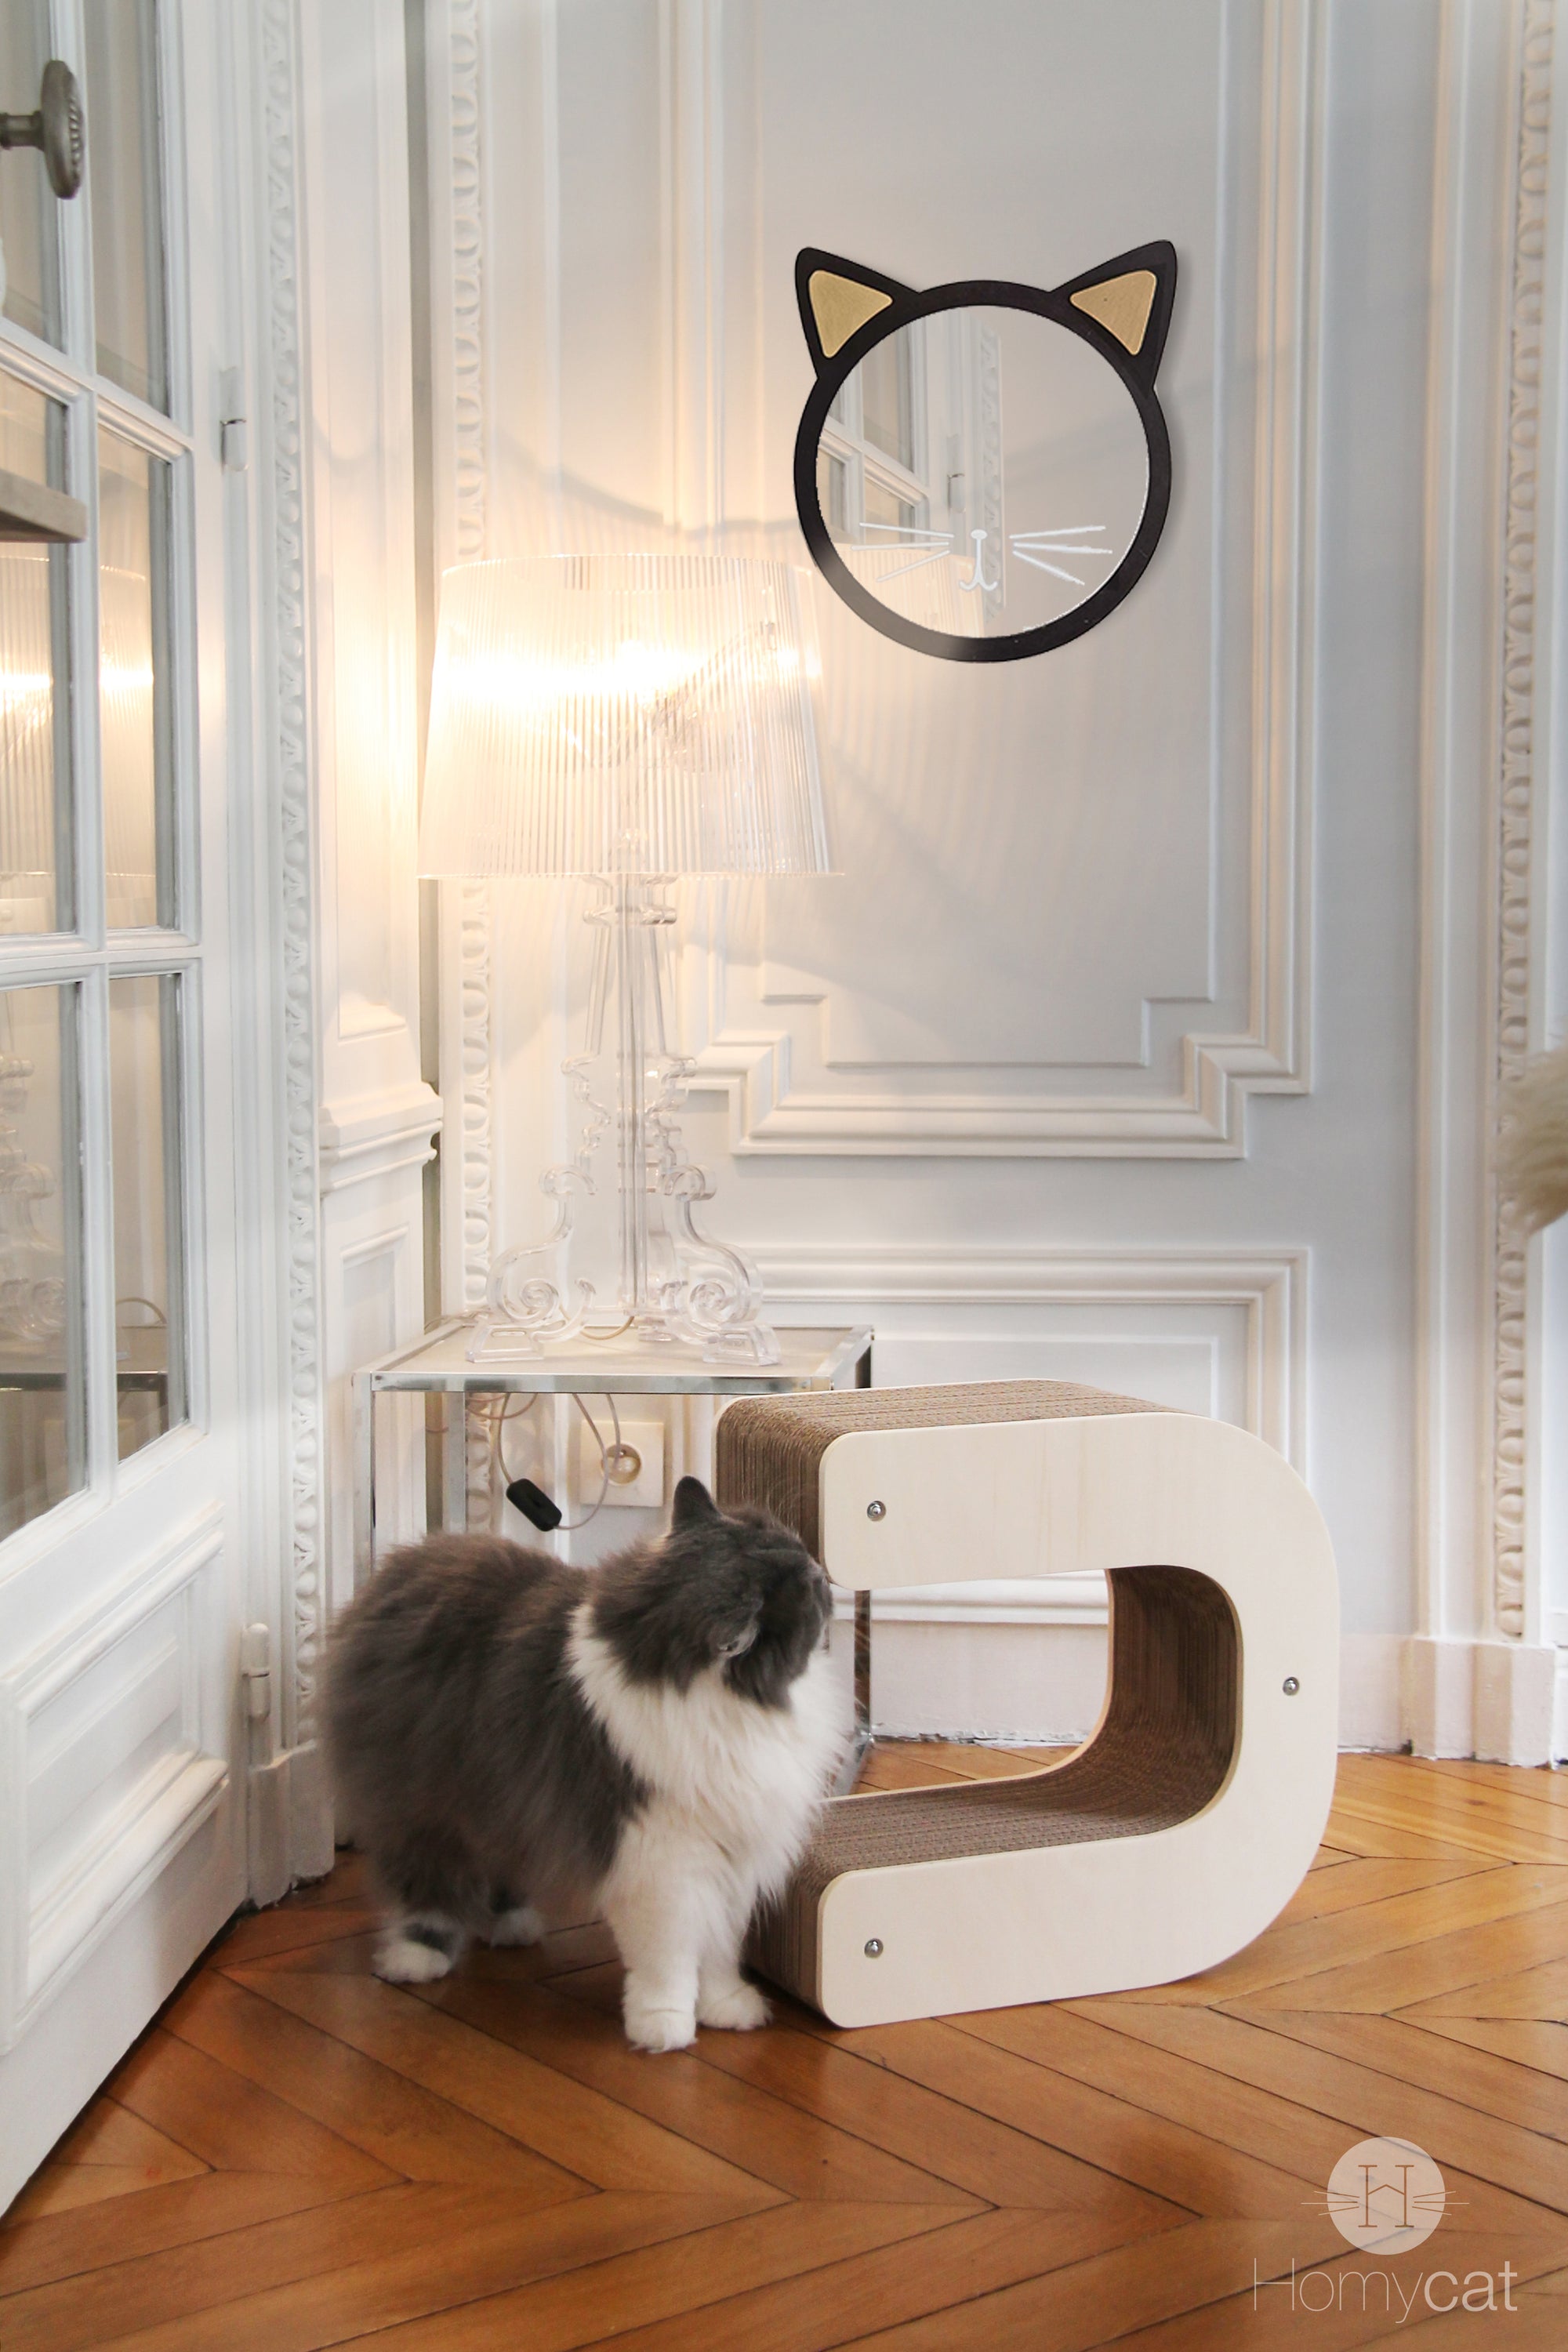 miroir-tete-de-chat-design-mignon-decoration-salon-plante-homycat